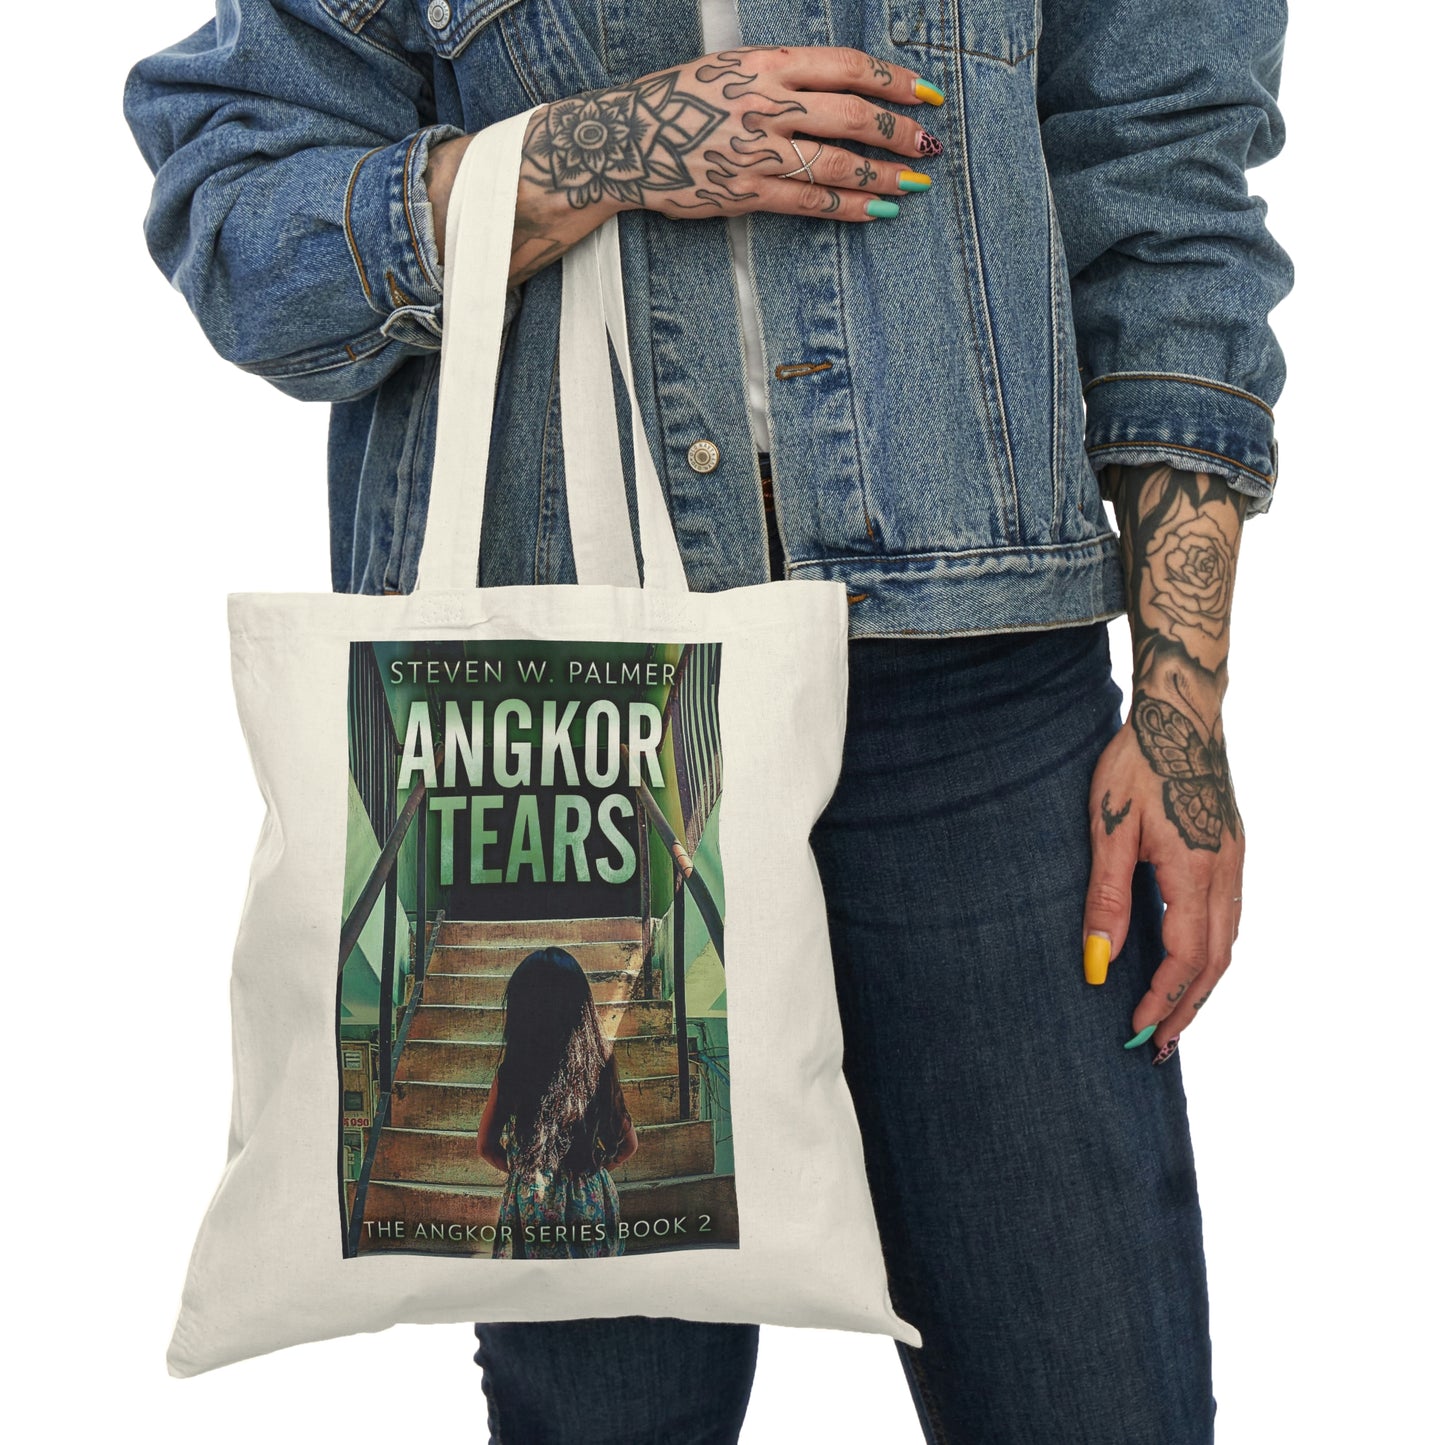 Angkor Tears - Natural Tote Bag